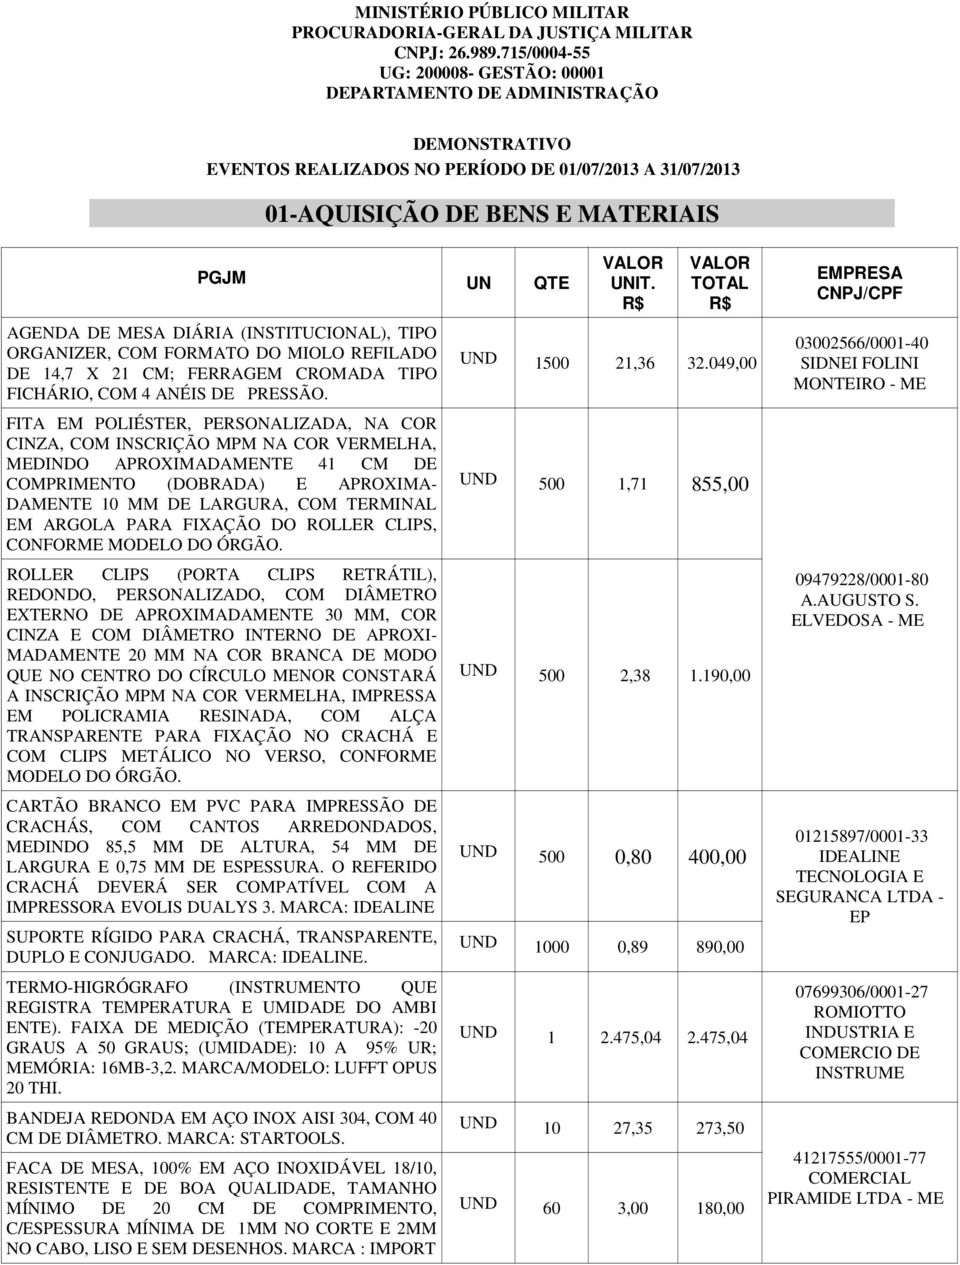 DIÁRIA (INSTITUCIONAL), TIPO ORGANIZER, COM FORMATO DO MIOLO REFILADO DE 14,7 X 21 CM; FERRAGEM CROMADA TIPO FICHÁRIO, COM 4 ANÉIS DE PRESSÃO.